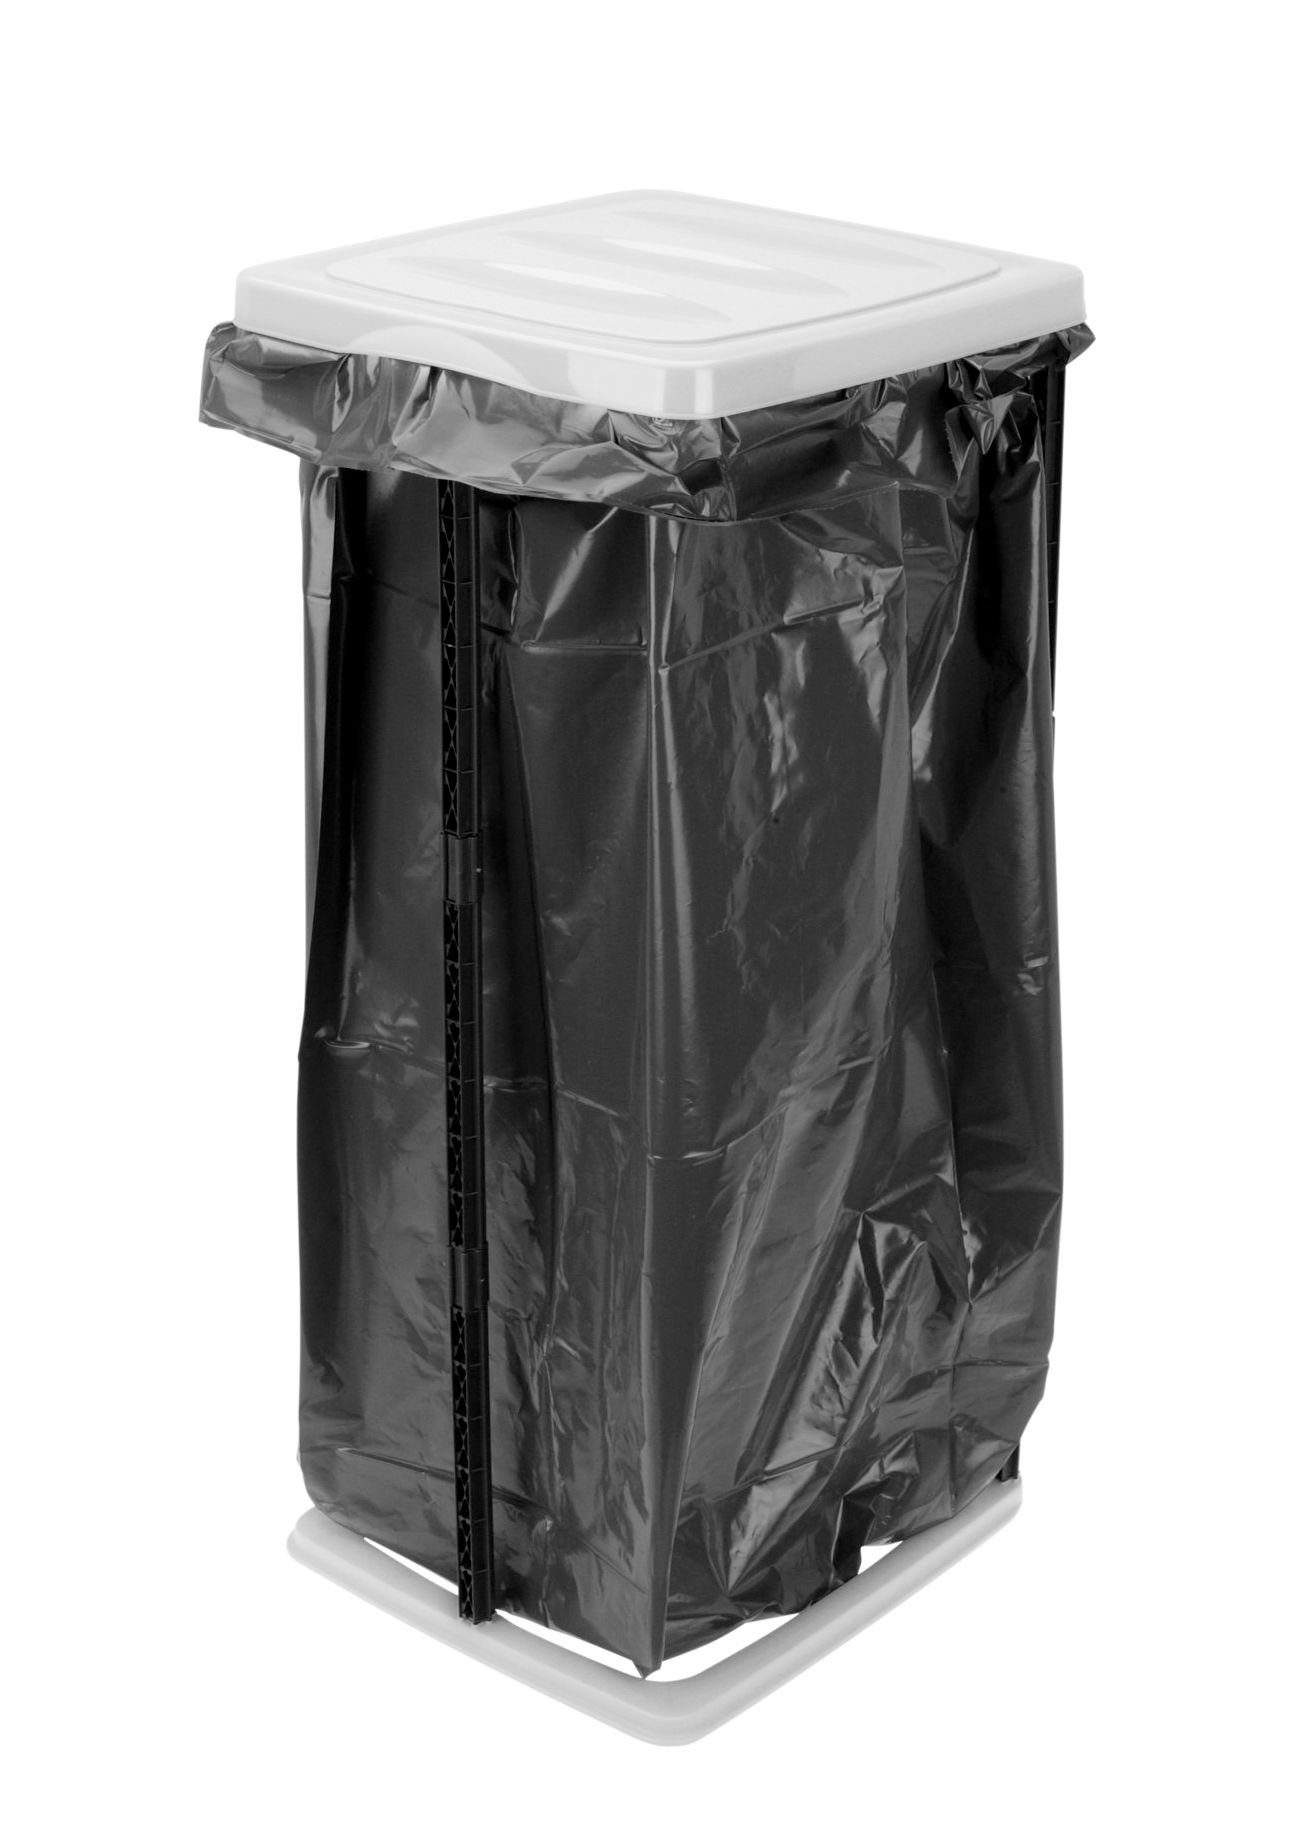 Spetebo Müllsackständer Kunststoff Müllsackständer weiß - 60 Liter, Ständer für große Müllbeutel